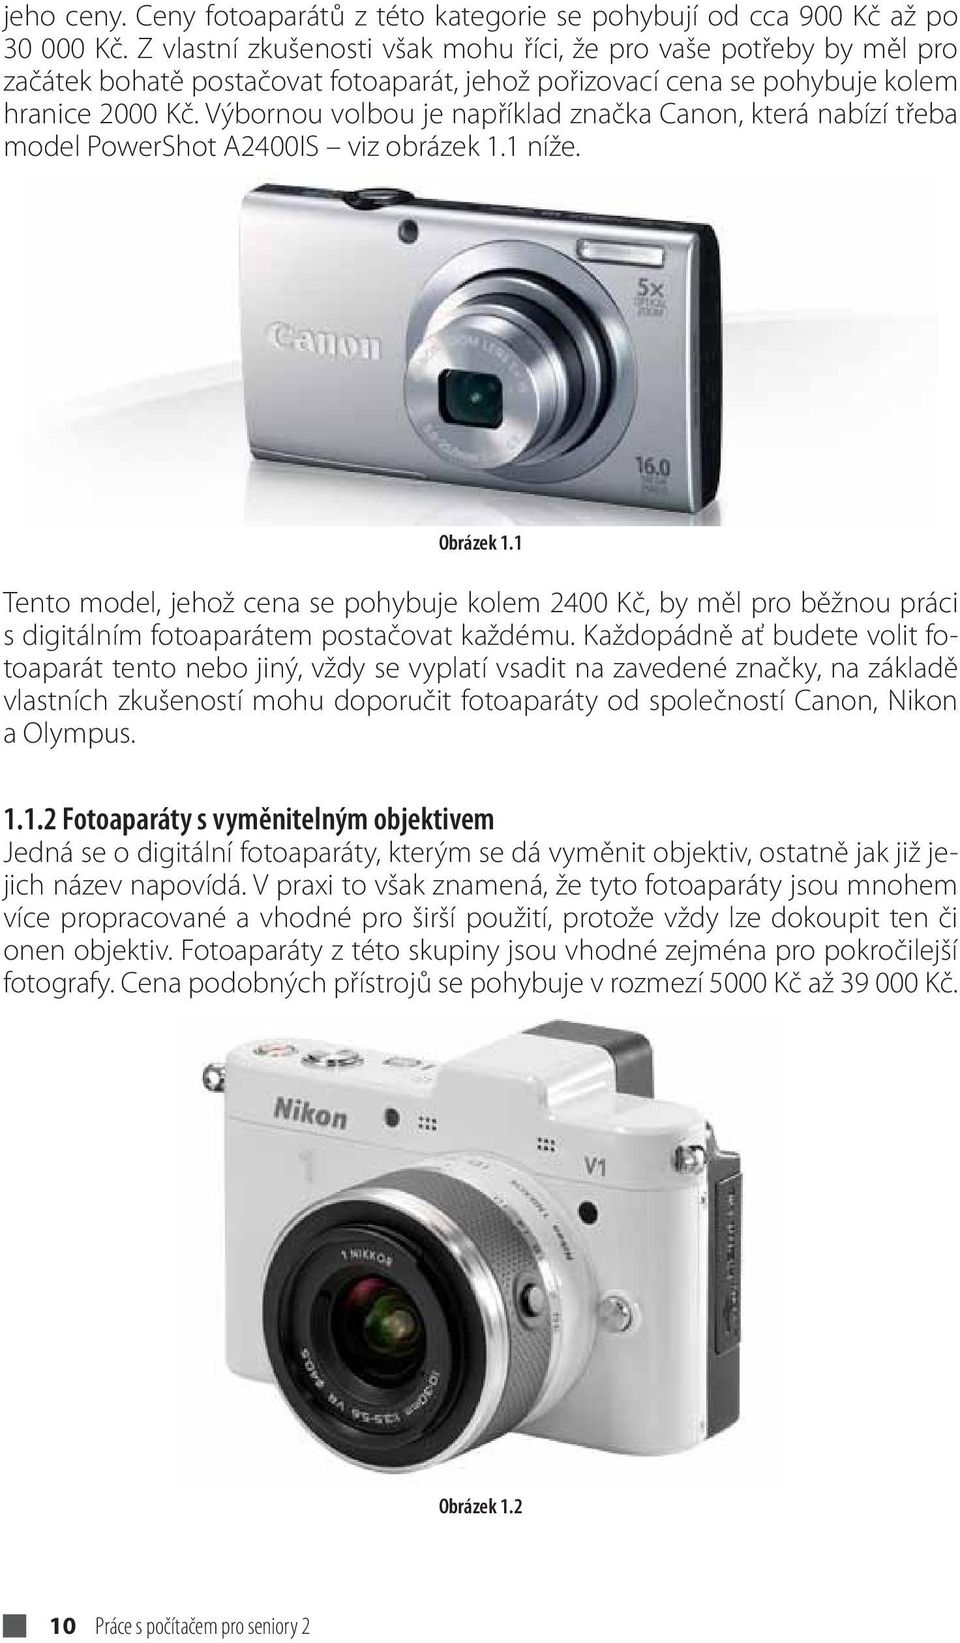 Výbornou volbou je například značka Canon, která nabízí třeba model PowerShot A2400IS viz obrázek 1.1 níže. Obrázek 1.